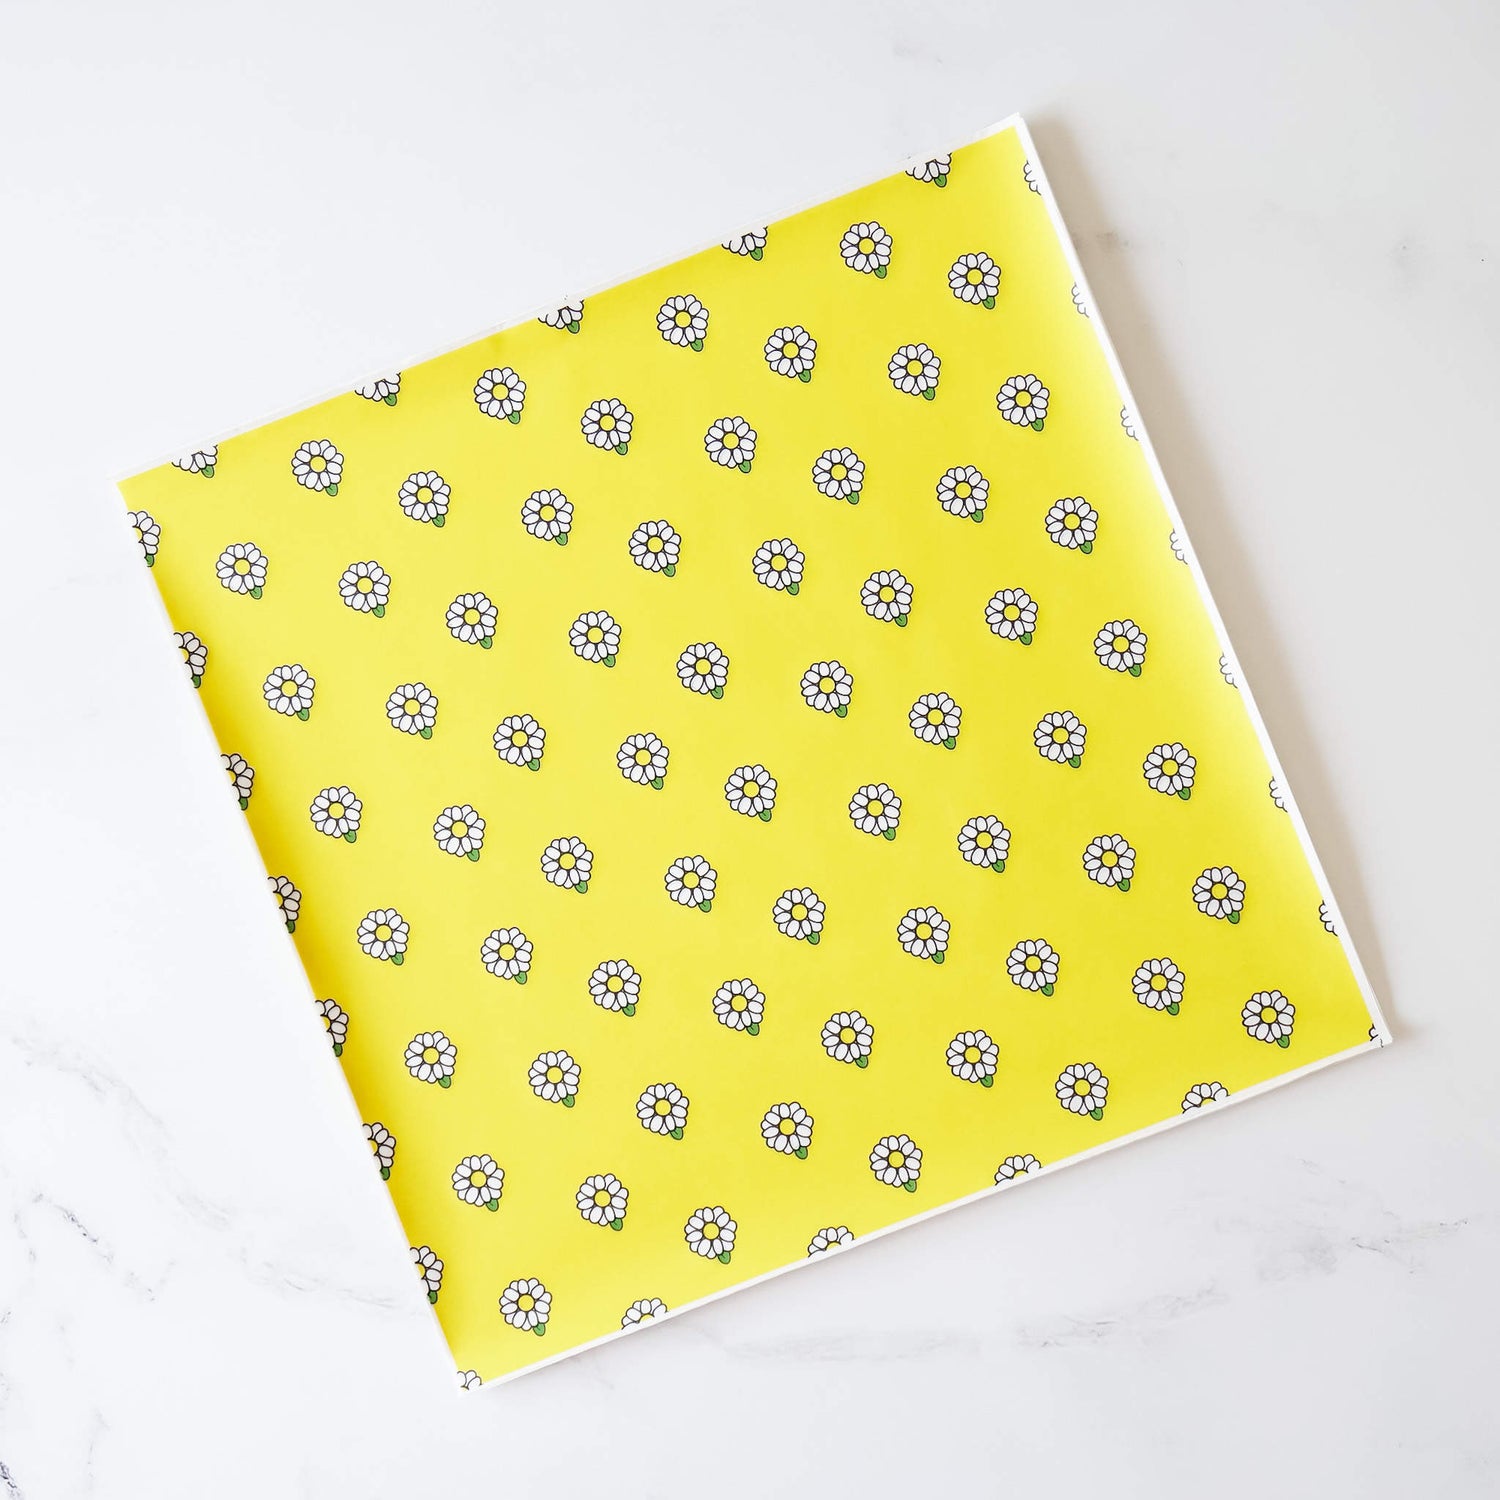 yellow daisy printed deli paper